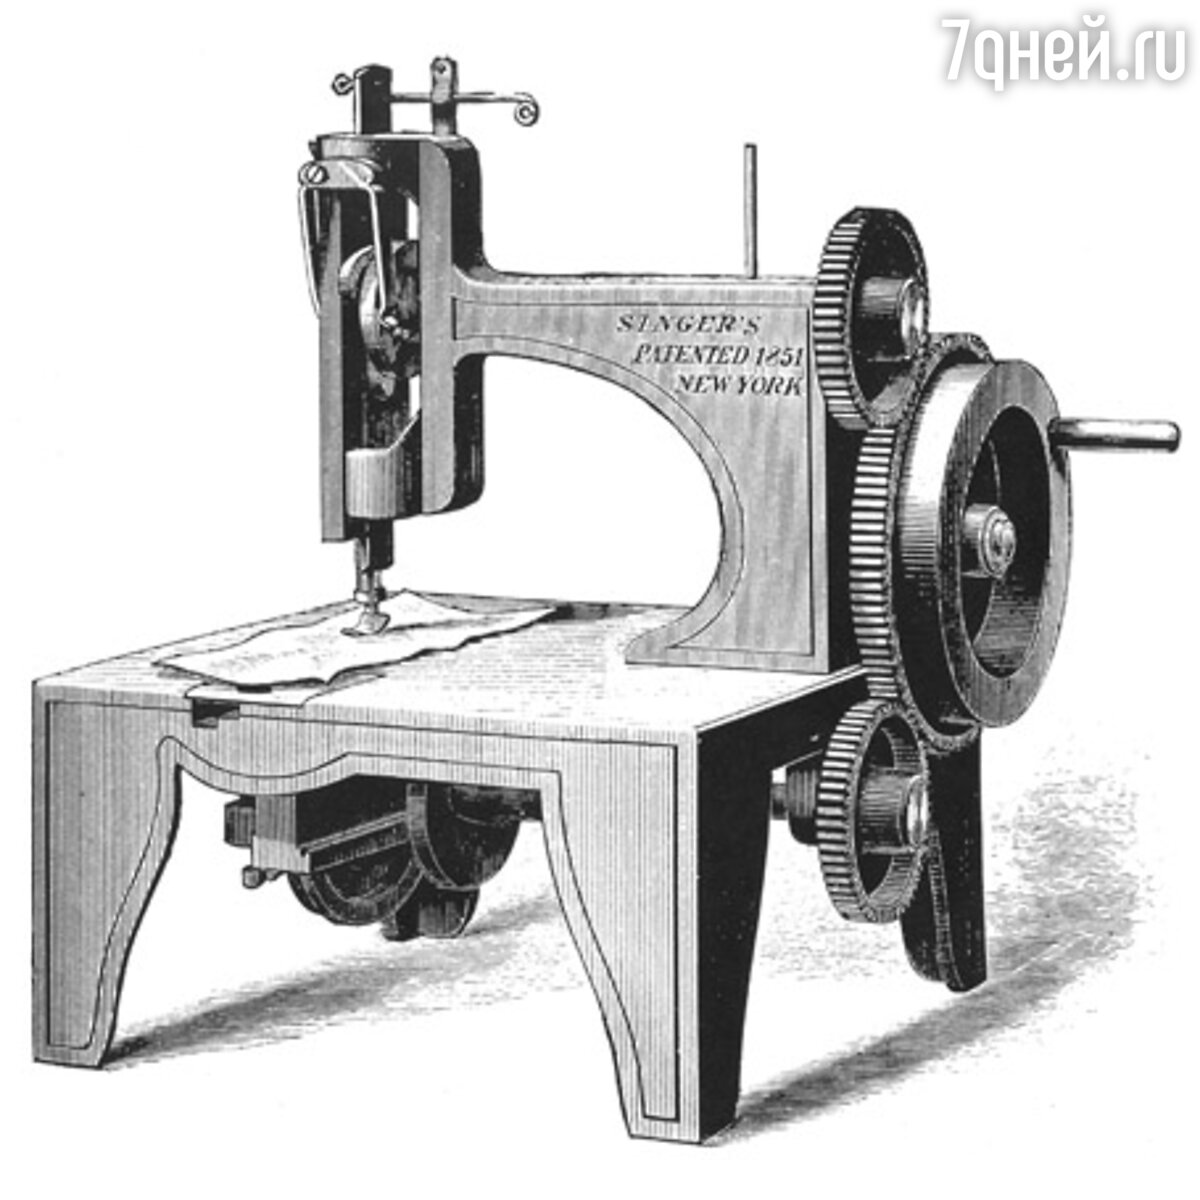 Швейная машинка порно видео